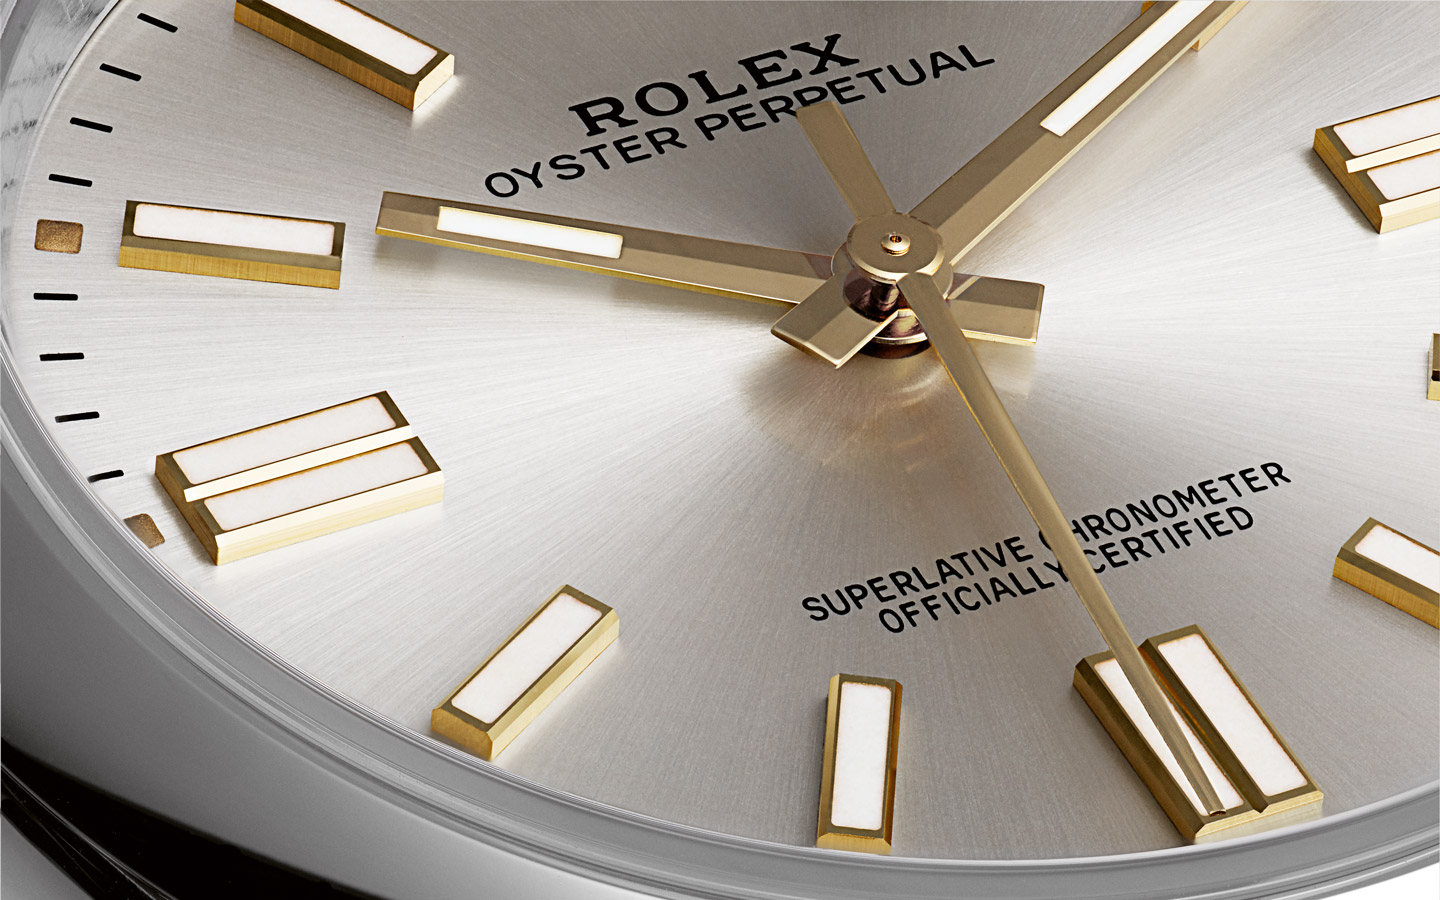 Rolex Oyster Perpetual, Chronometer-Zertifizierung der Superlative